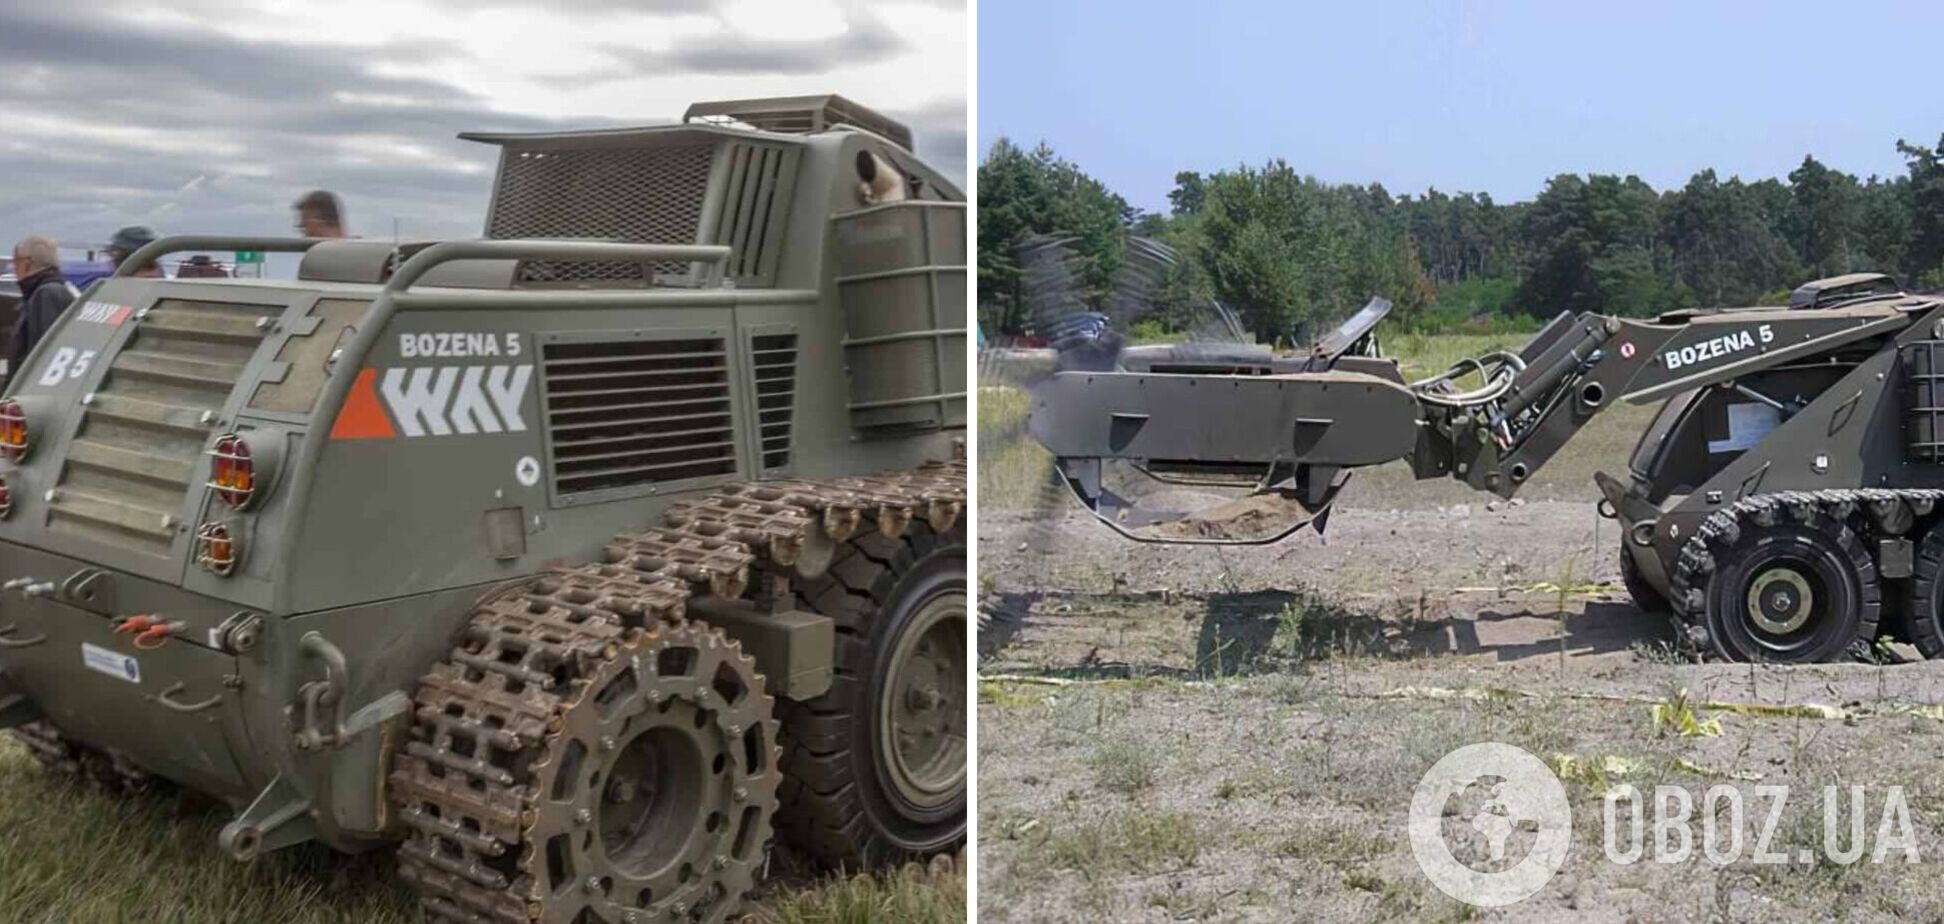 Словакия заказала для ВСУ машину разминирования Božena-5, когда она поступит в Украину. Фото